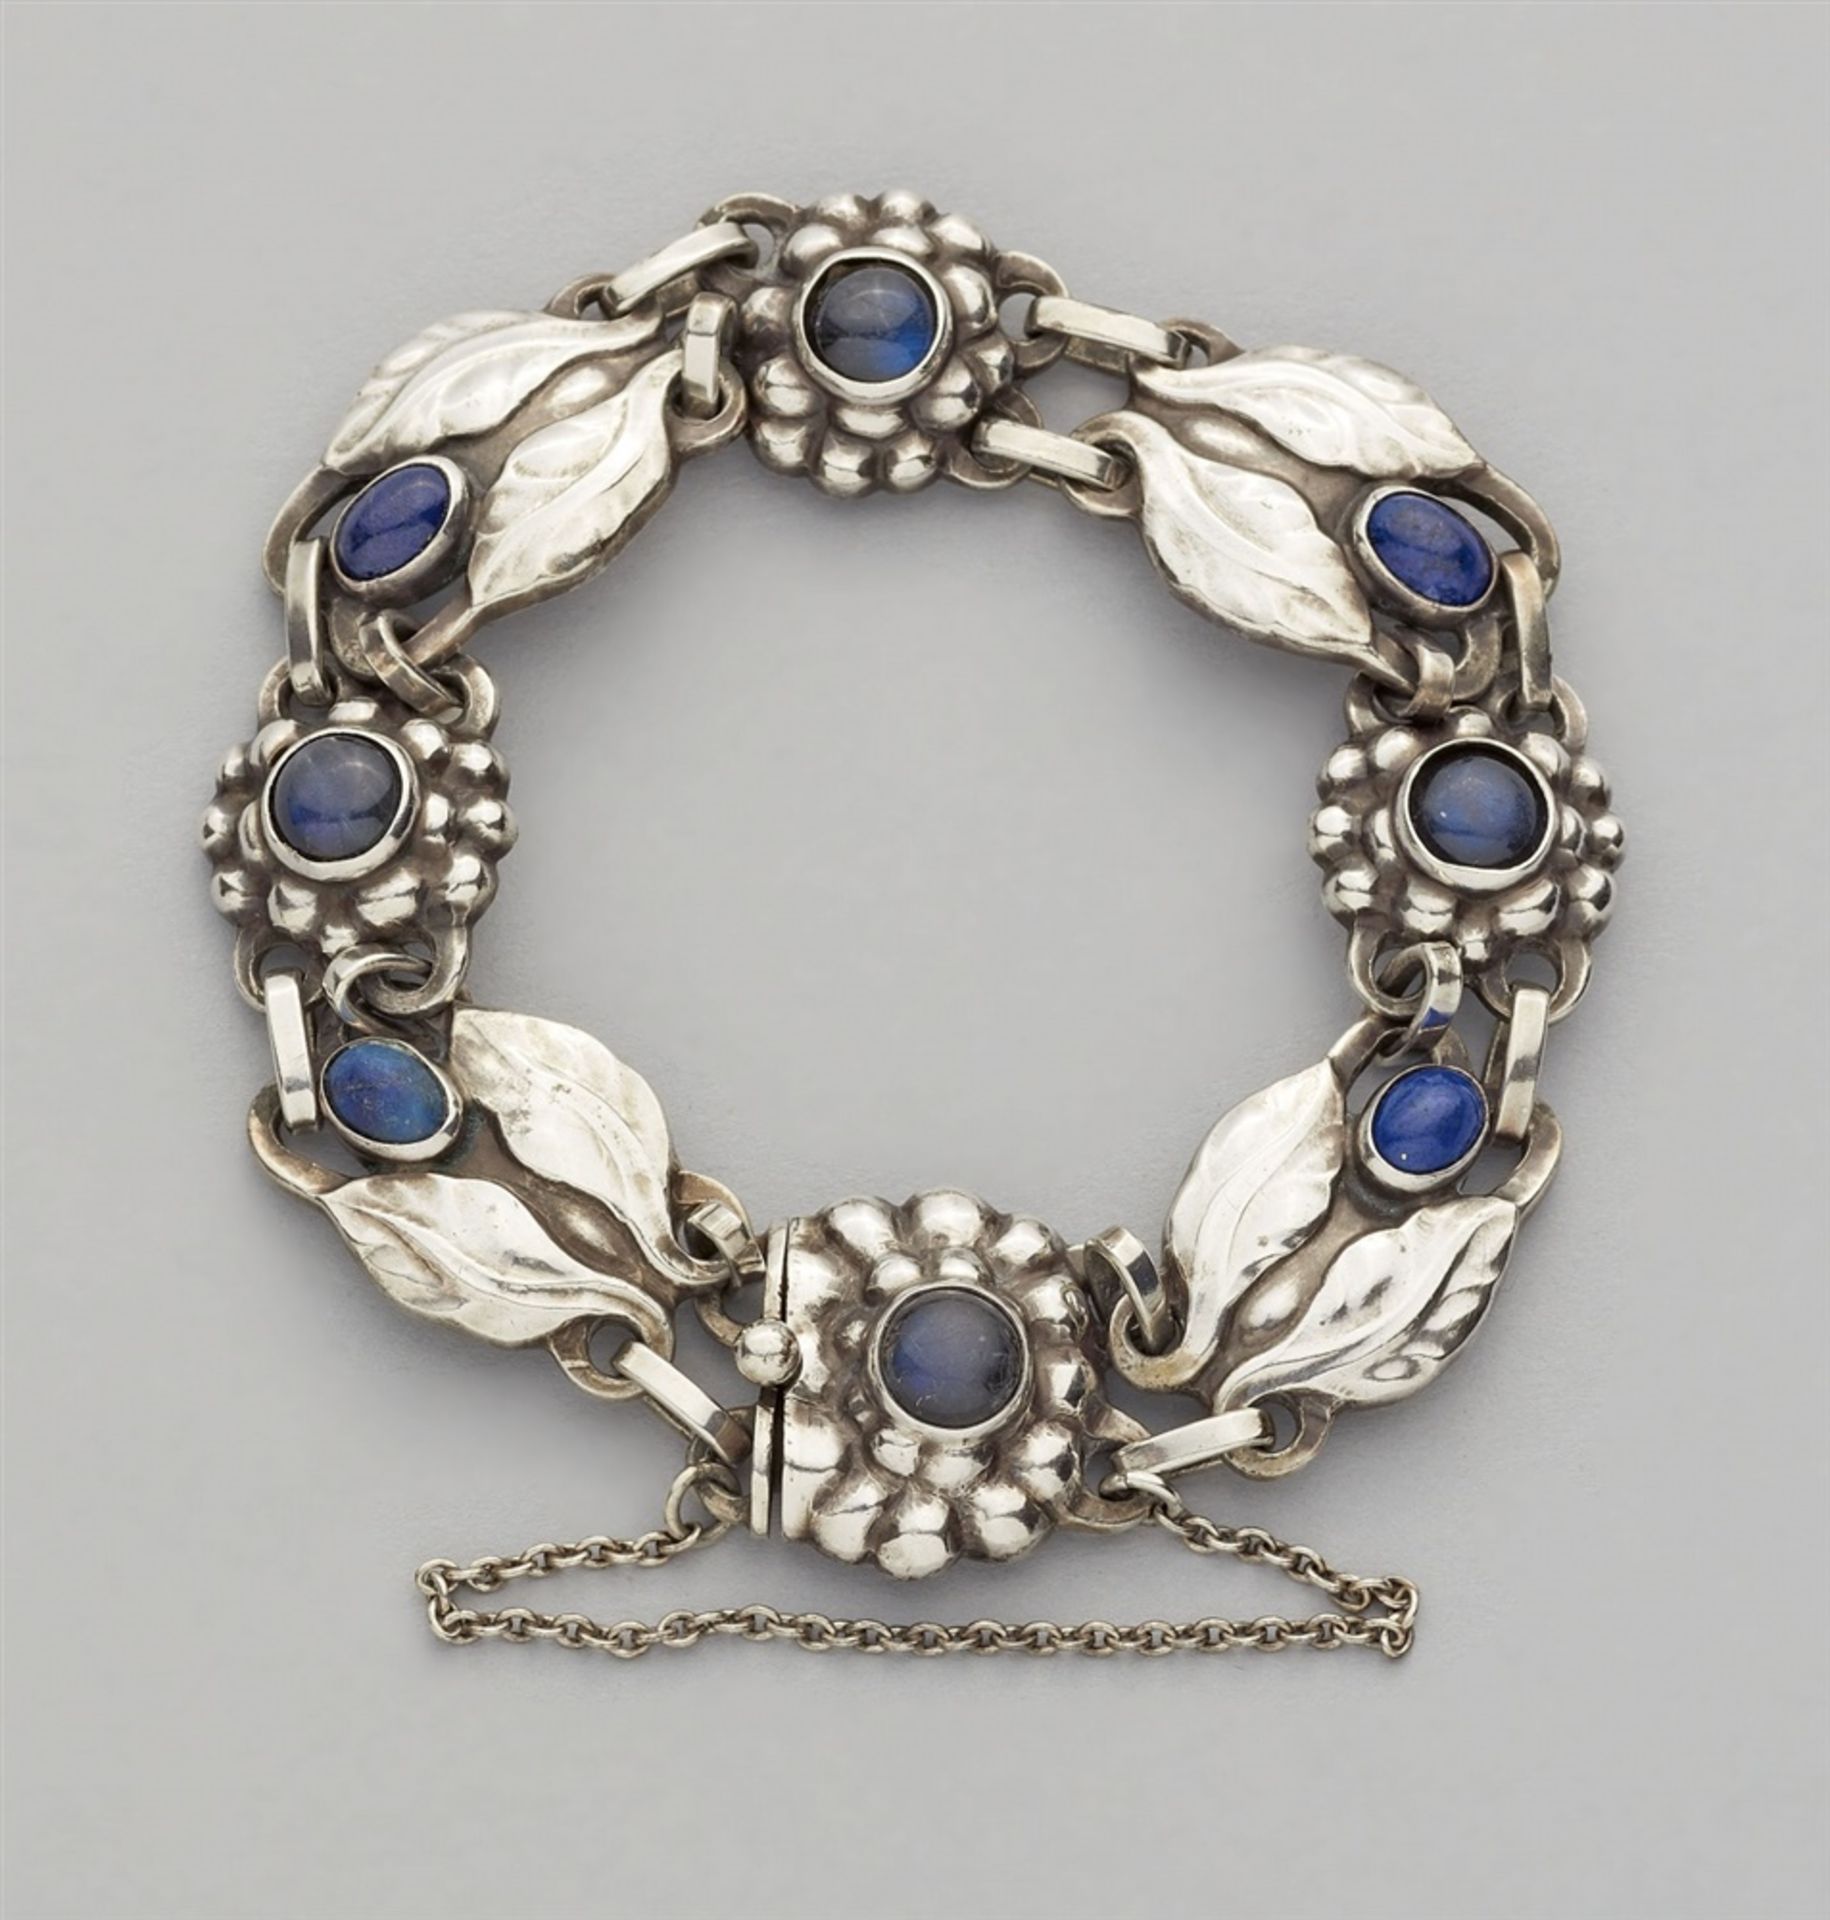 A Jugendstil silver bracelet by Georg Jensen, model no. 3A strand of stylised flower and leaf shaped